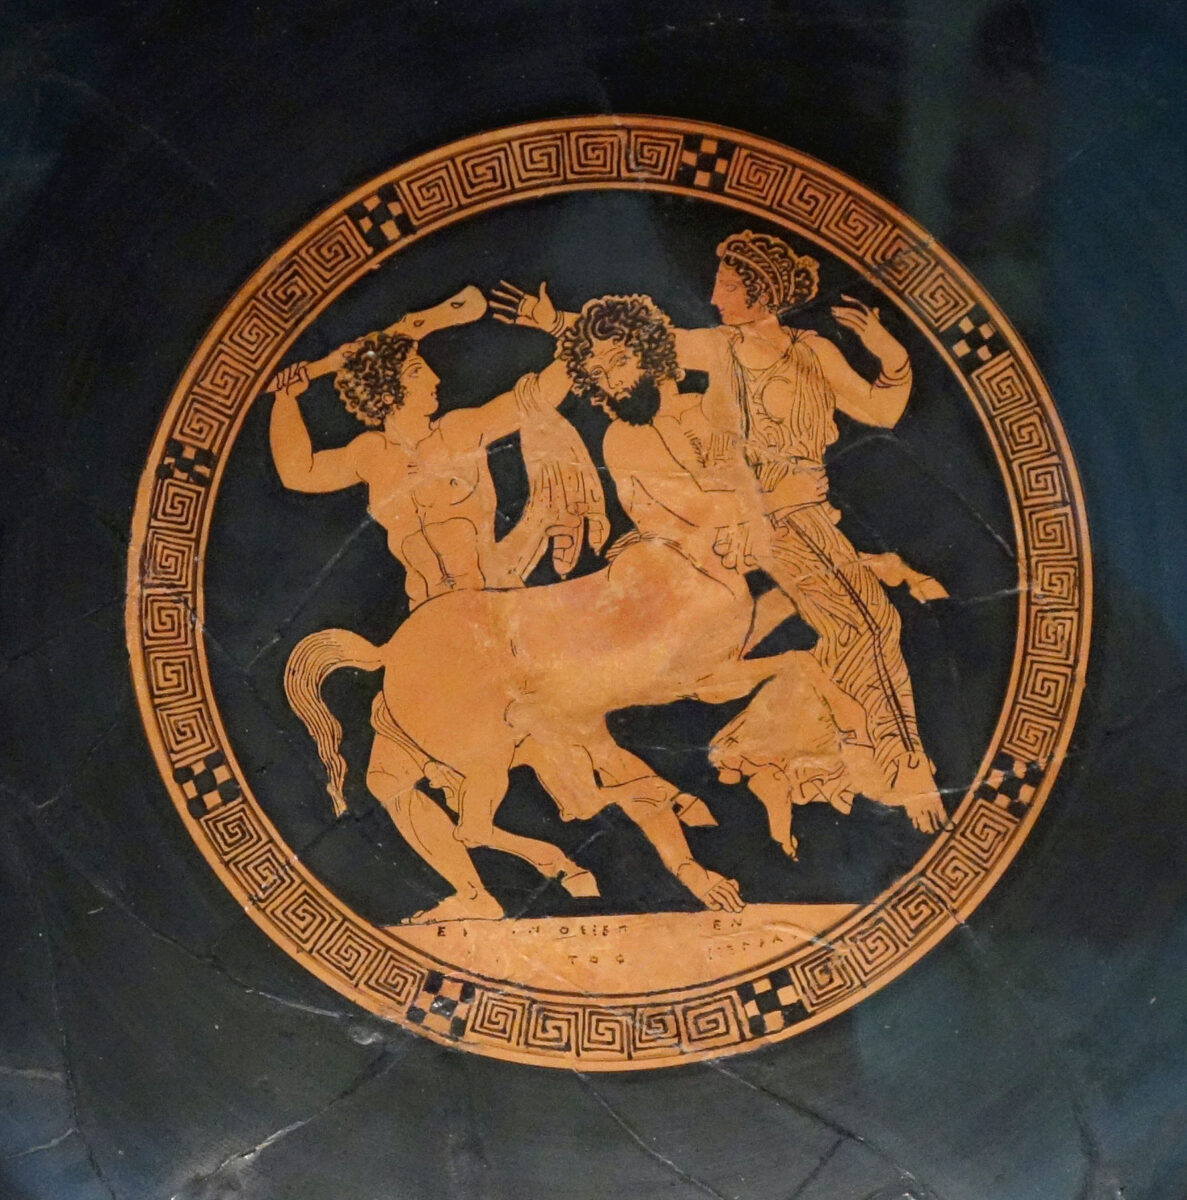 Ο Ηρακλής, η Δηιάνειρα και ο Νέσσος σε αττική ερυθρόμορφη κύλικα, 5ος αι. π.Χ. Μουσείο Καλών Τεχνών της Βοστώνης. Πηγή εικόνας: Wikimedia Commons.